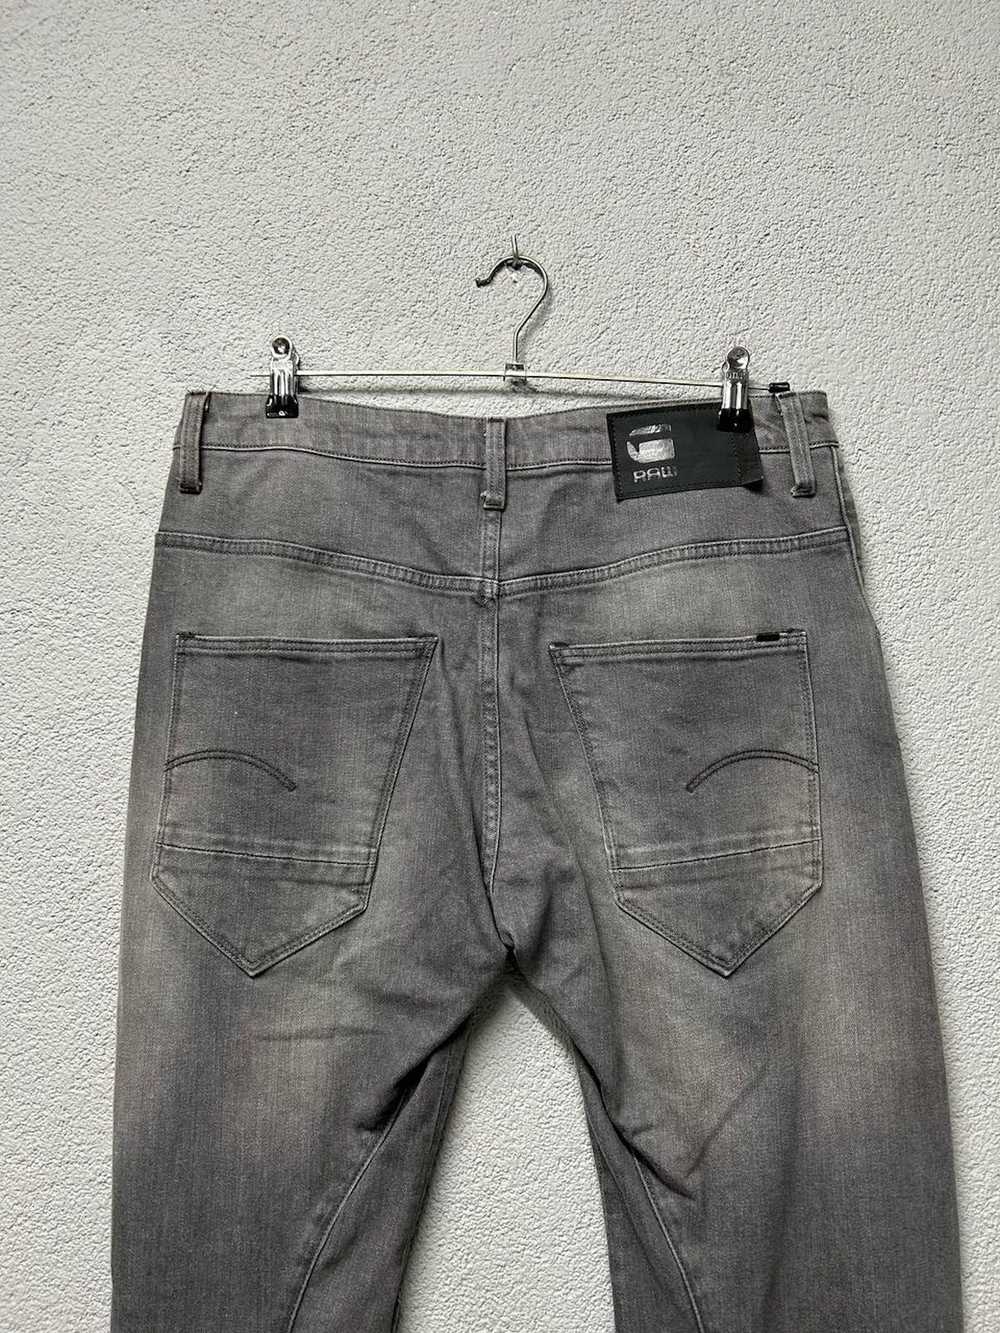 Gstar G Star Raw ARC 3d jeans mens W 30 L 34 - image 7